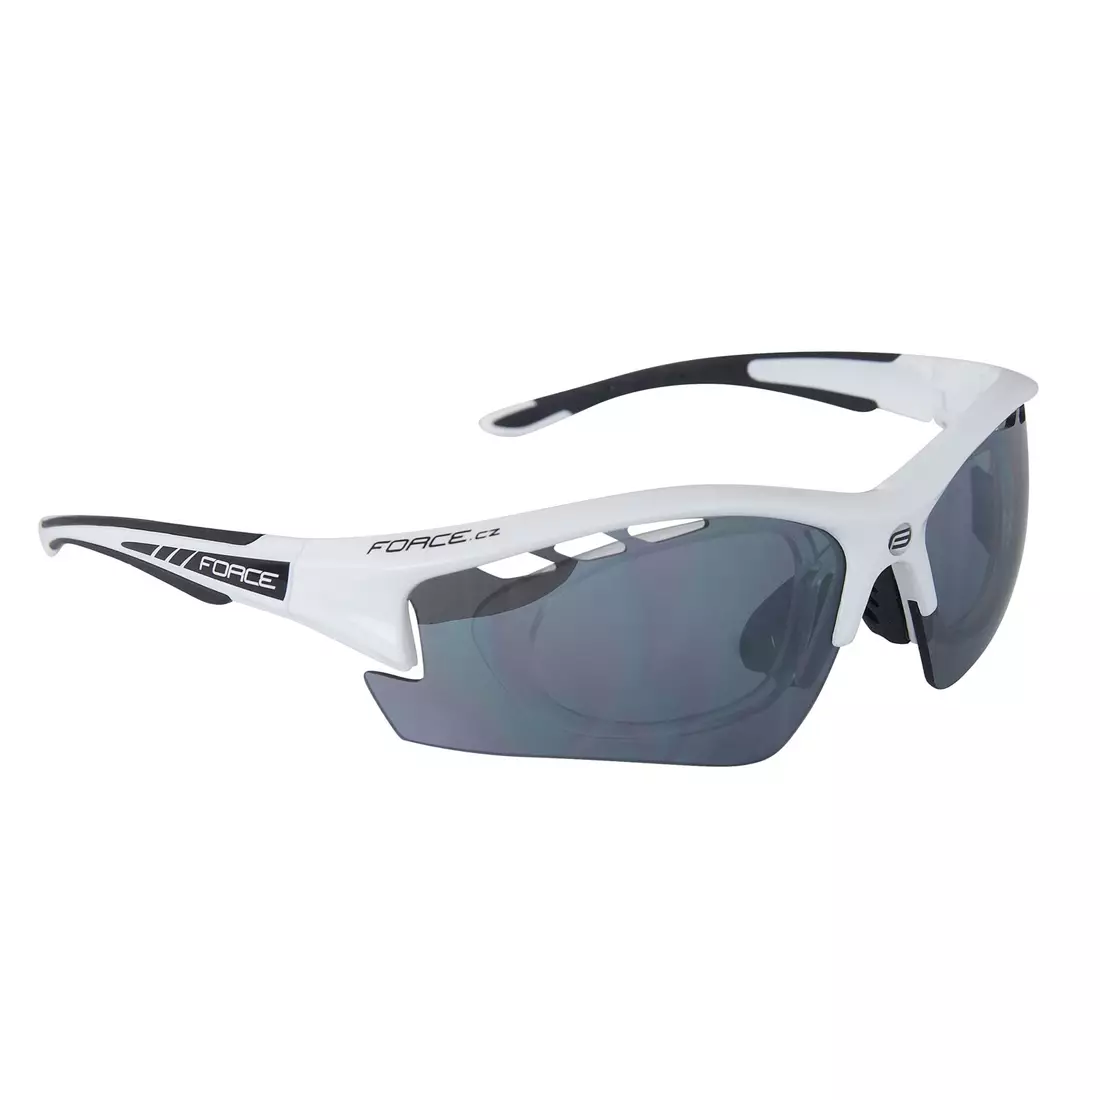 9092225 FORCE RIDE PRO szemüveg cserélhető lencsékkel + korrekciós fehér